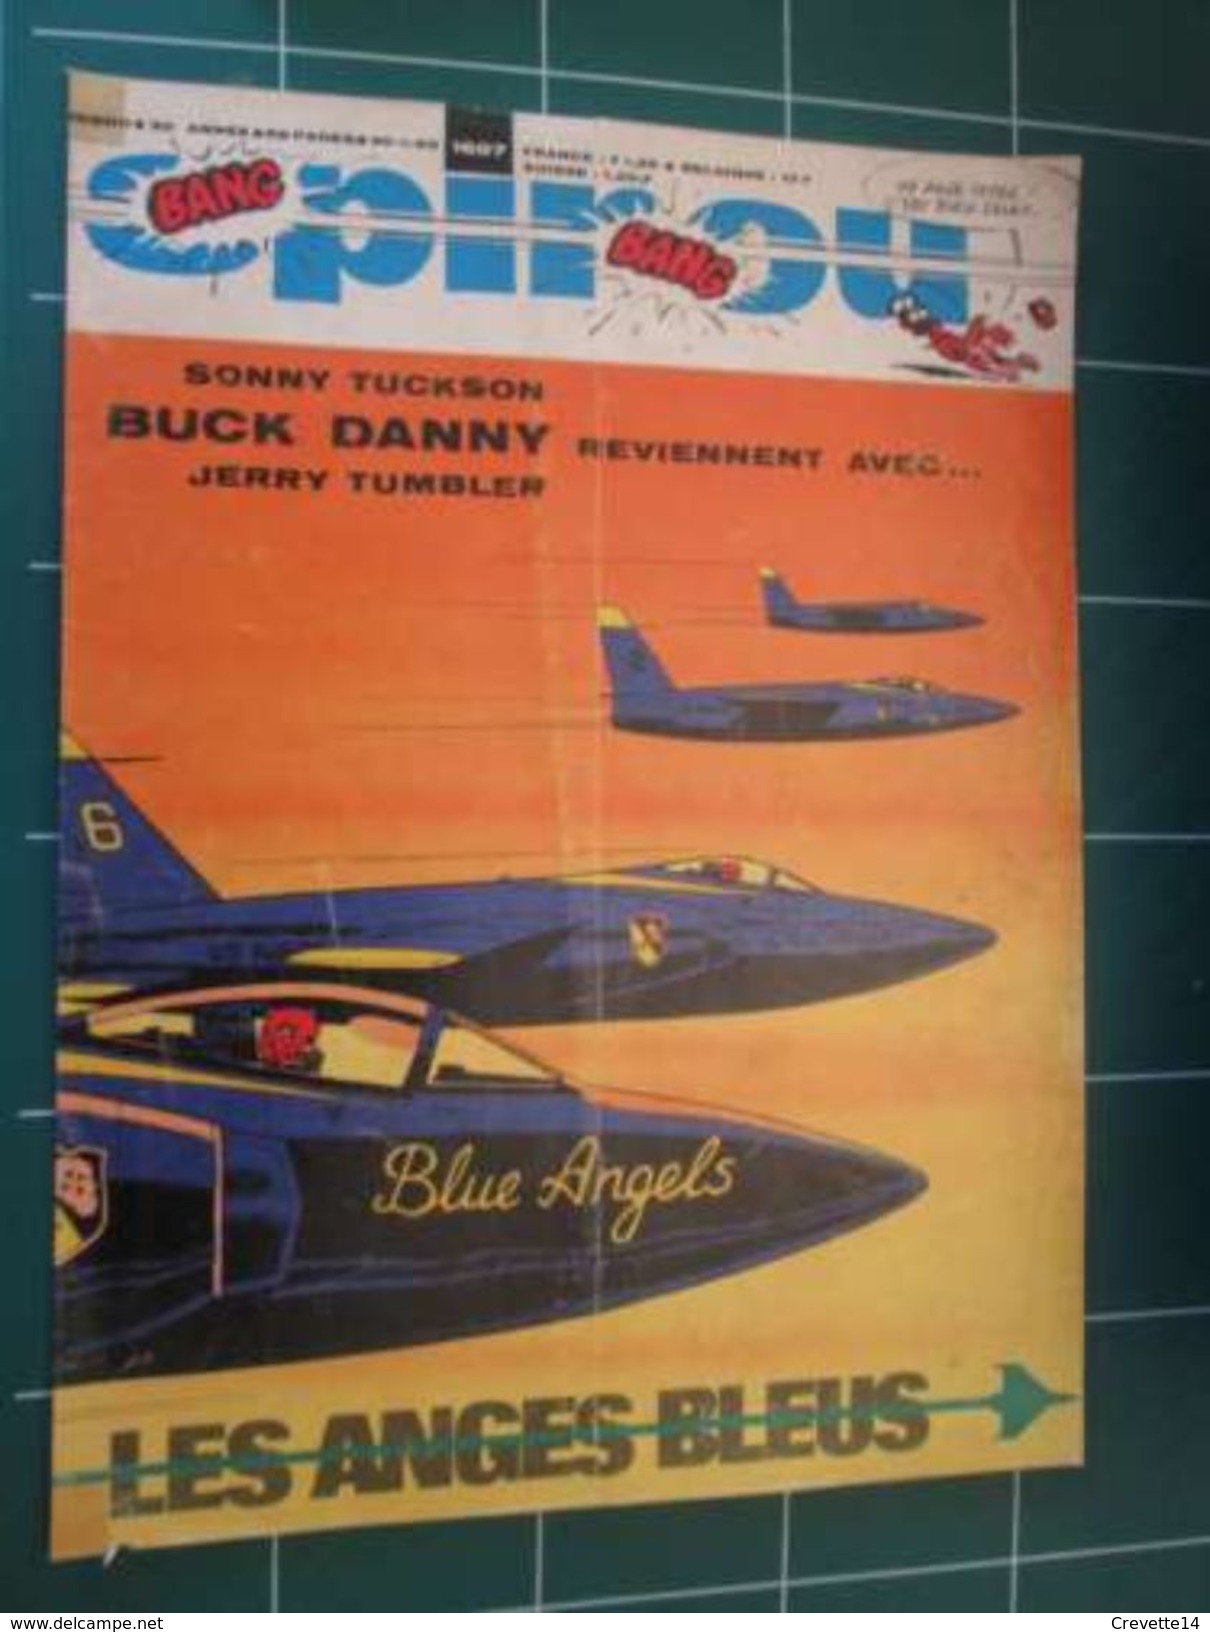 CLIP916 :  Couverture SPIROU Avec BUCK DANNY Dessiné Par HUBINON , Découpée Dans Une Revue SPIROU Des Années 70/80 . - Buck Danny